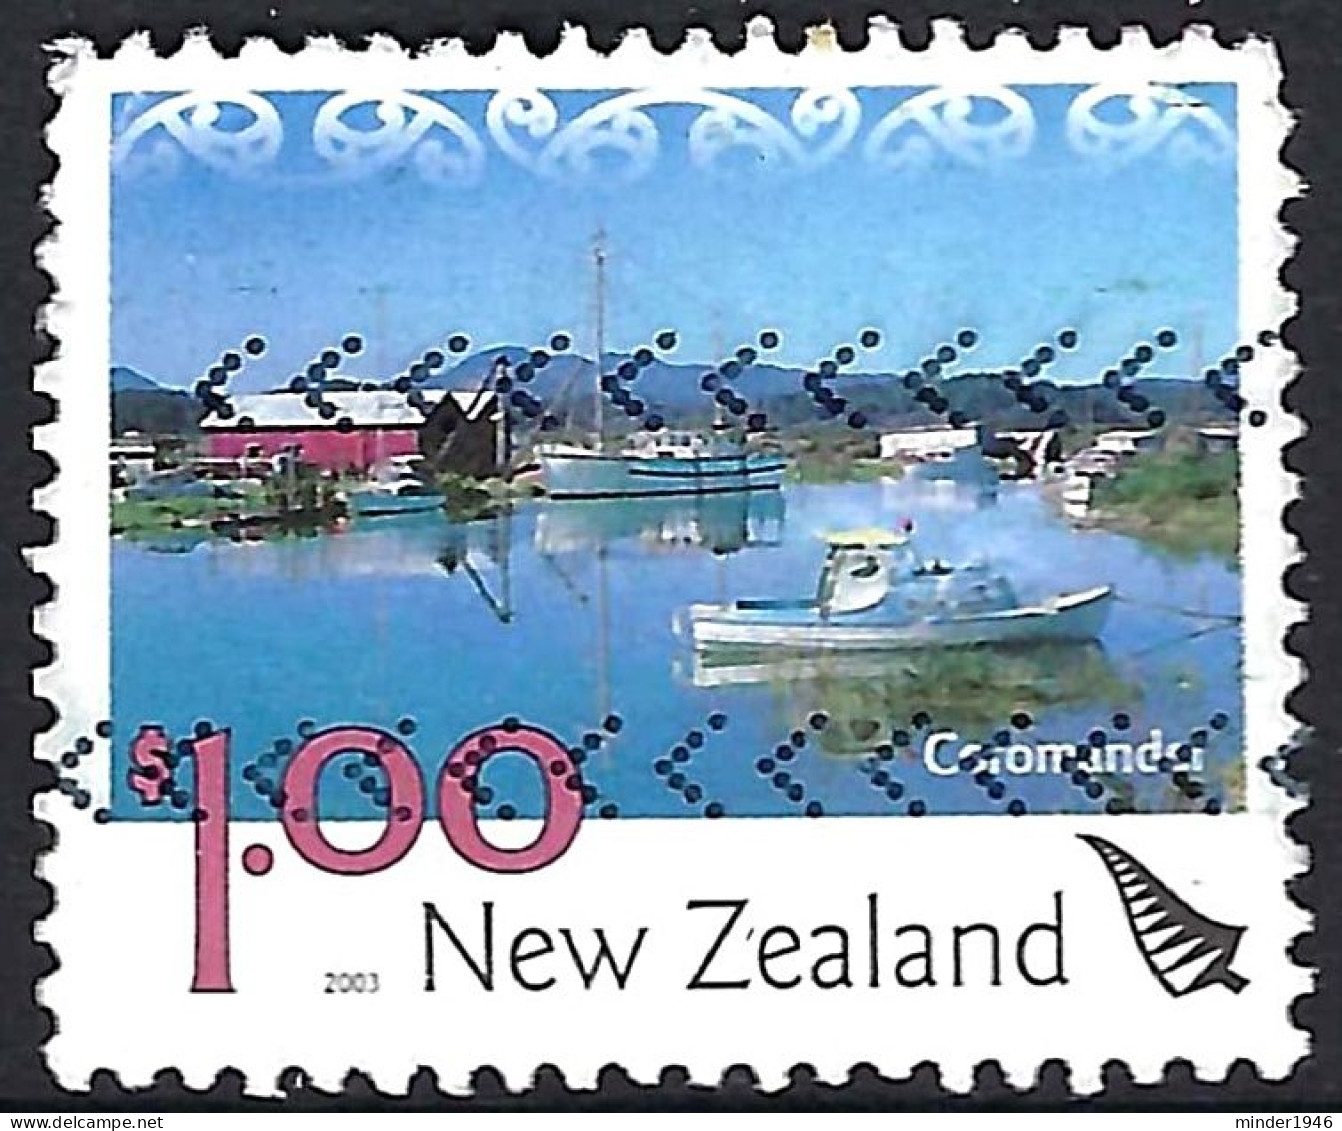 NEW ZEALAND 2003 QEII $1 Multicoloured, Scenery-Coromandel FU - Gebruikt